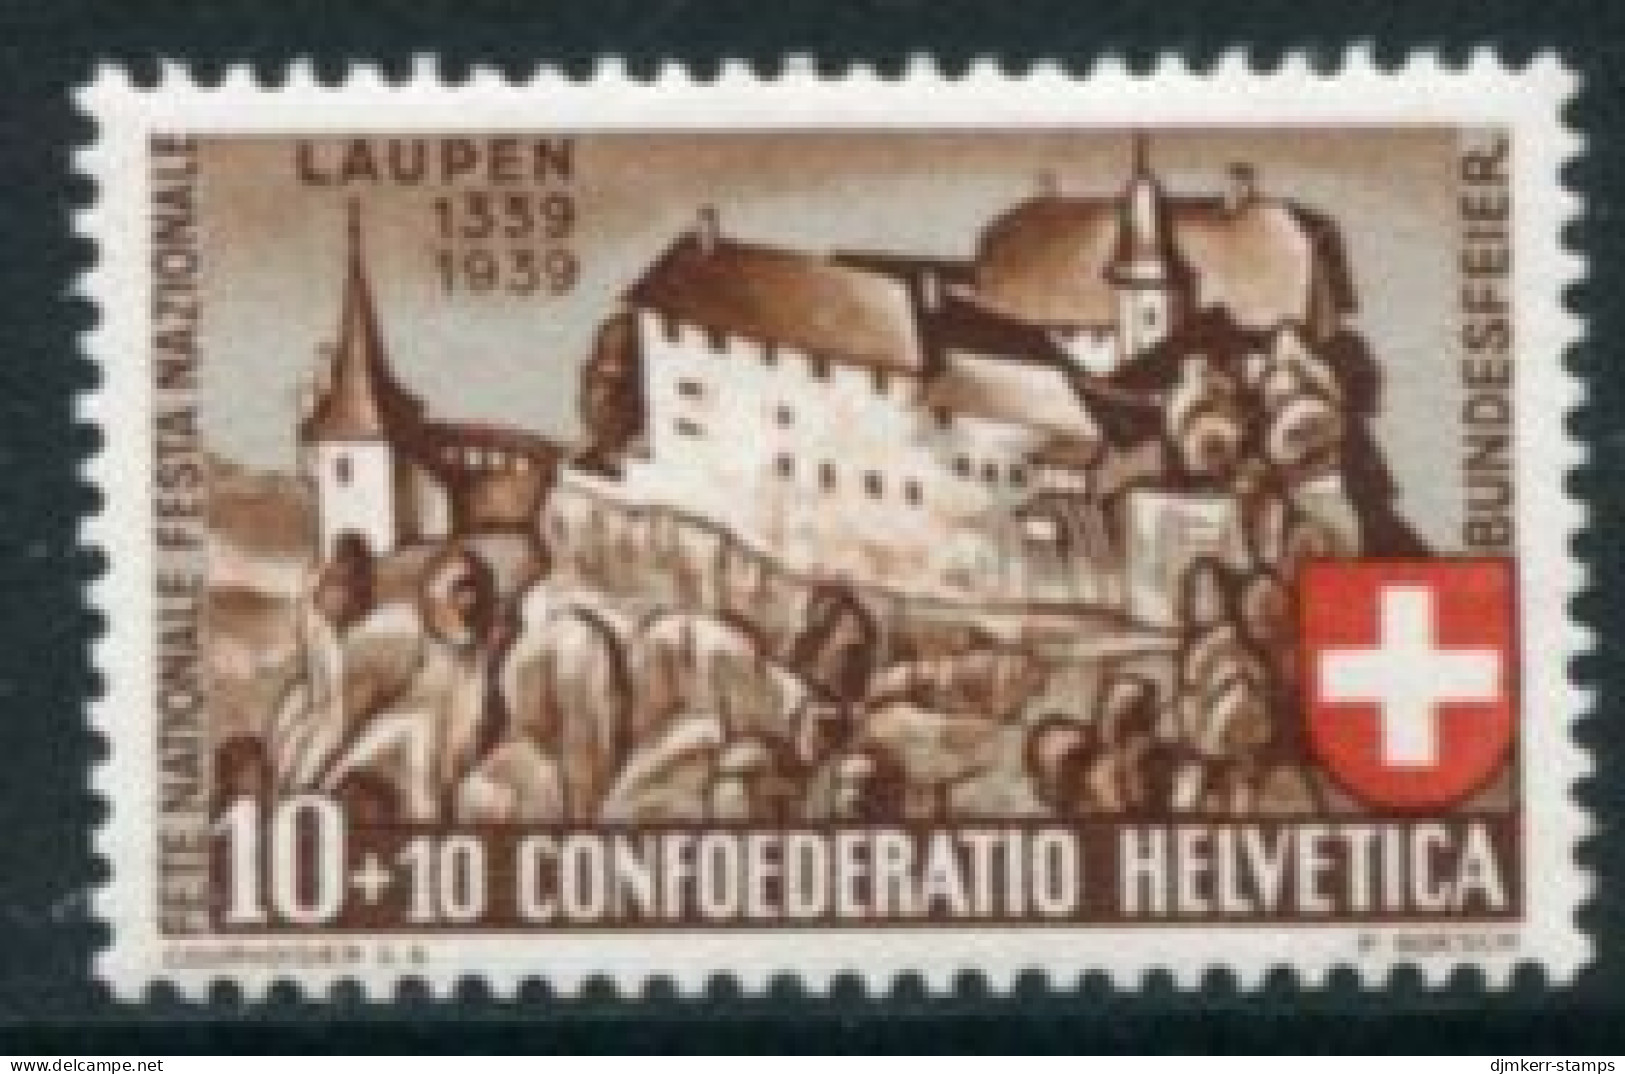 SWITZERLAND 1939 Pro Patria: Battle Of Laupen MNH / **  . Michel 356 - Ungebraucht